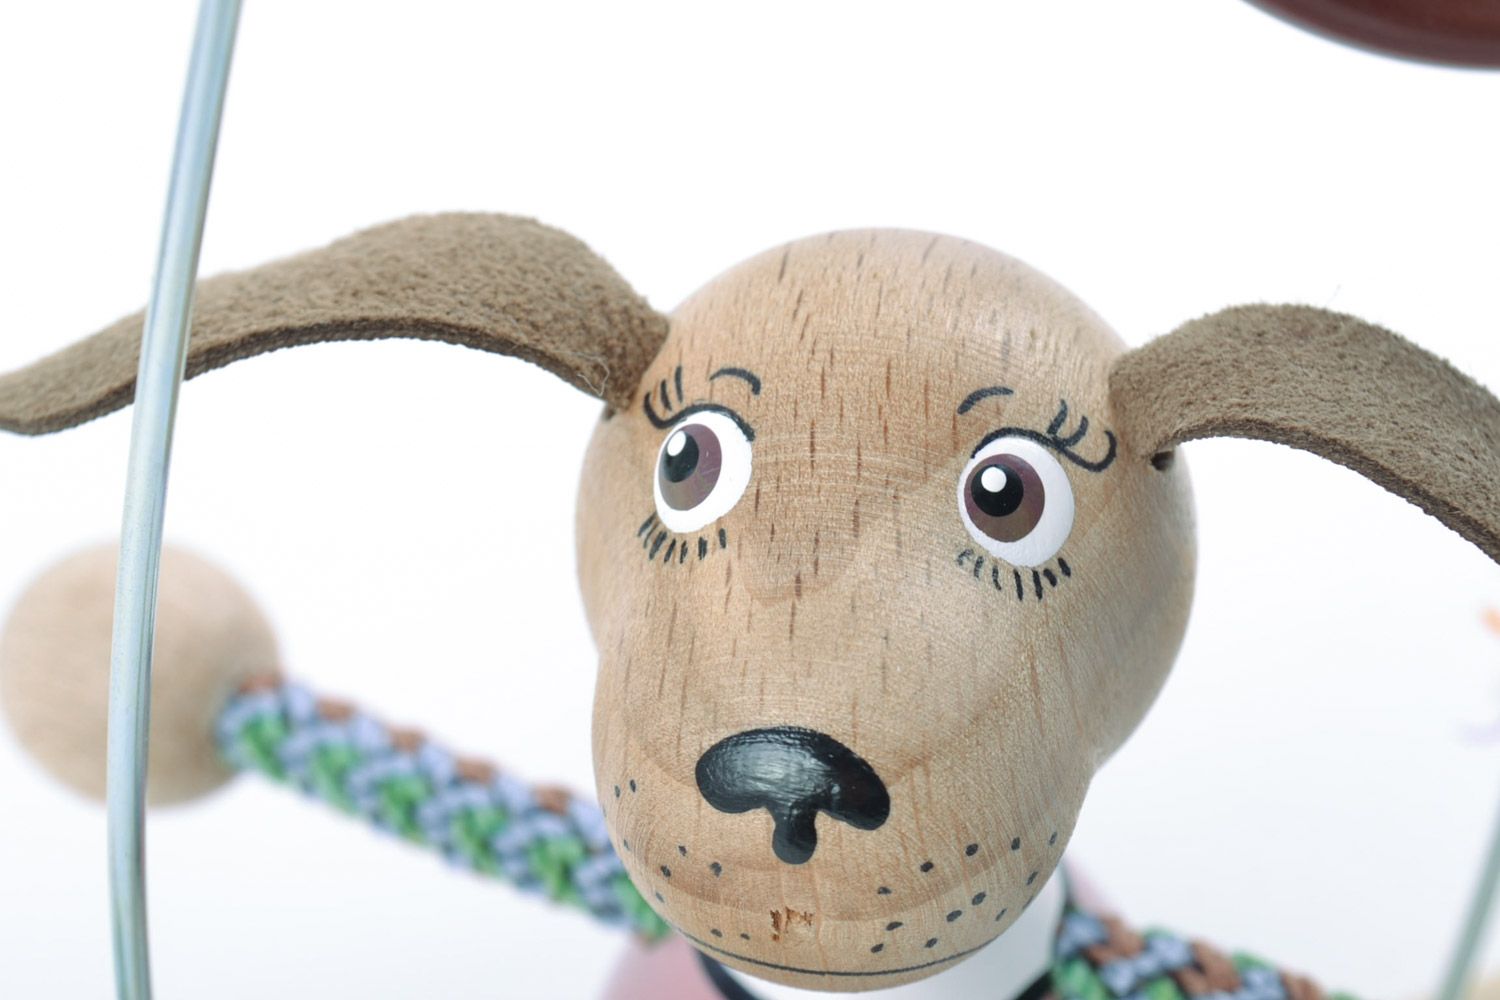 Designer Kinder Holz Spielzeug Hund aus der Bank mit Öko Farben bemalt einzigartig foto 4